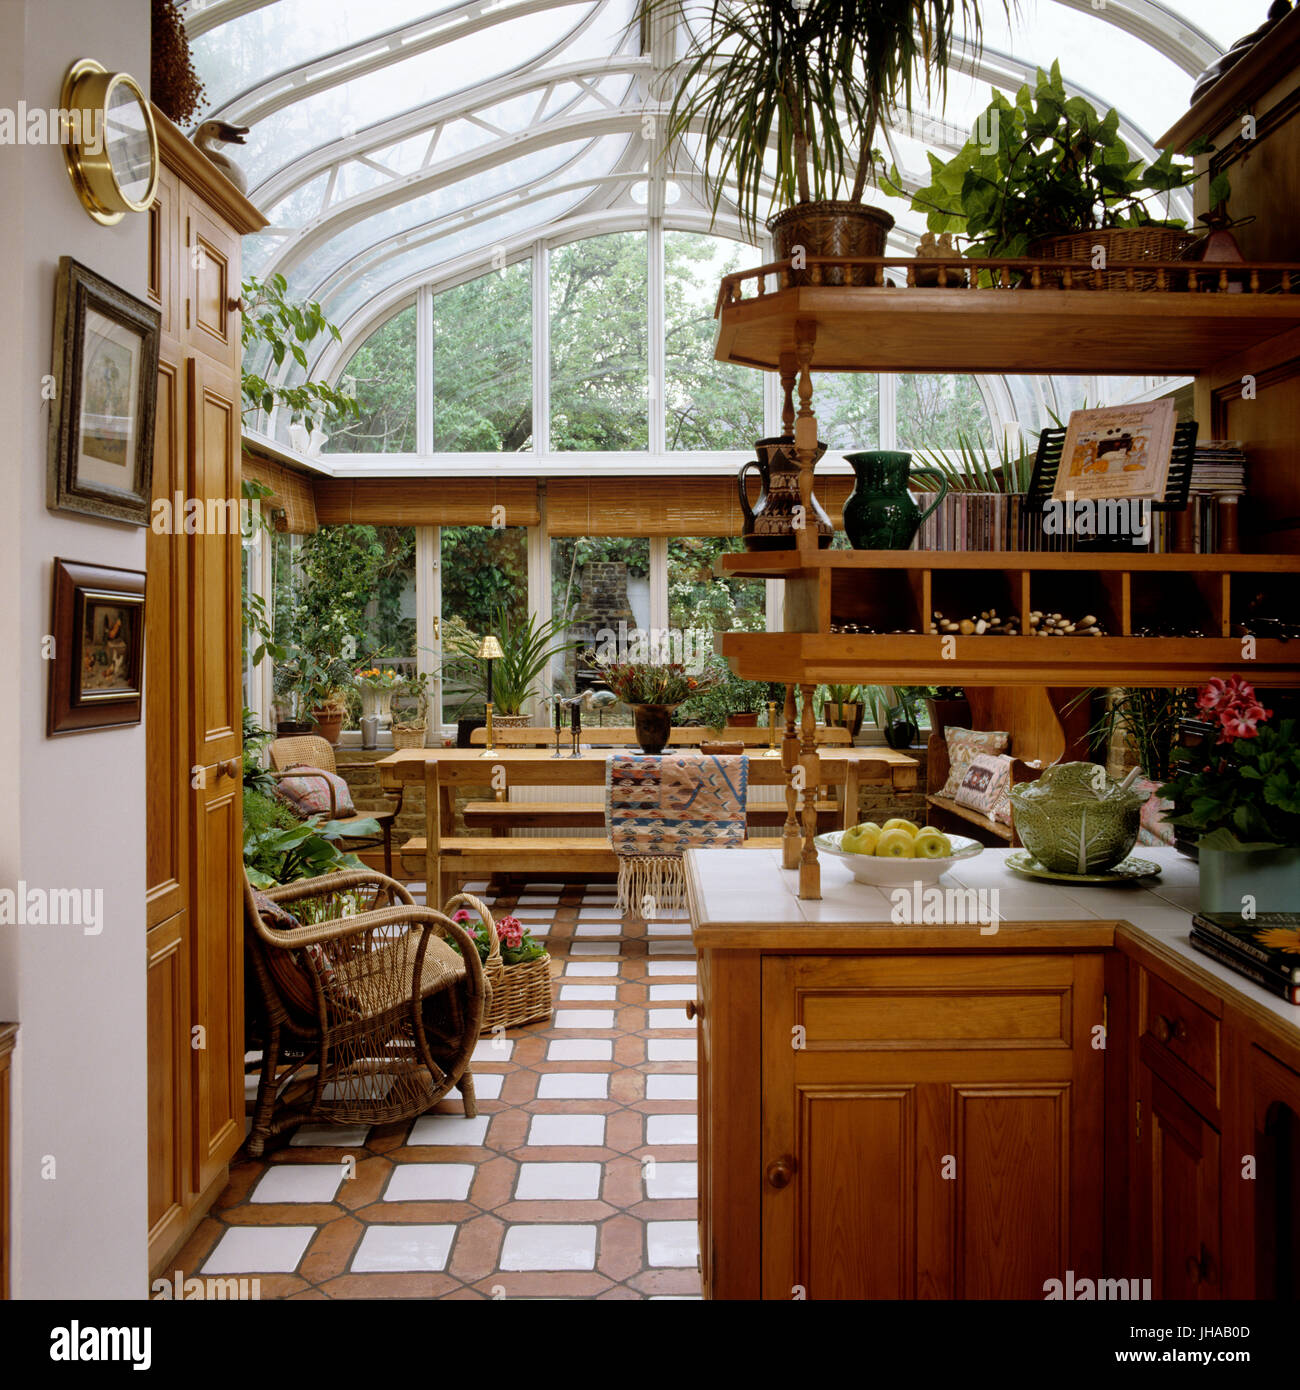 Wintergarten mit Küche Stockfotografie - Alamy